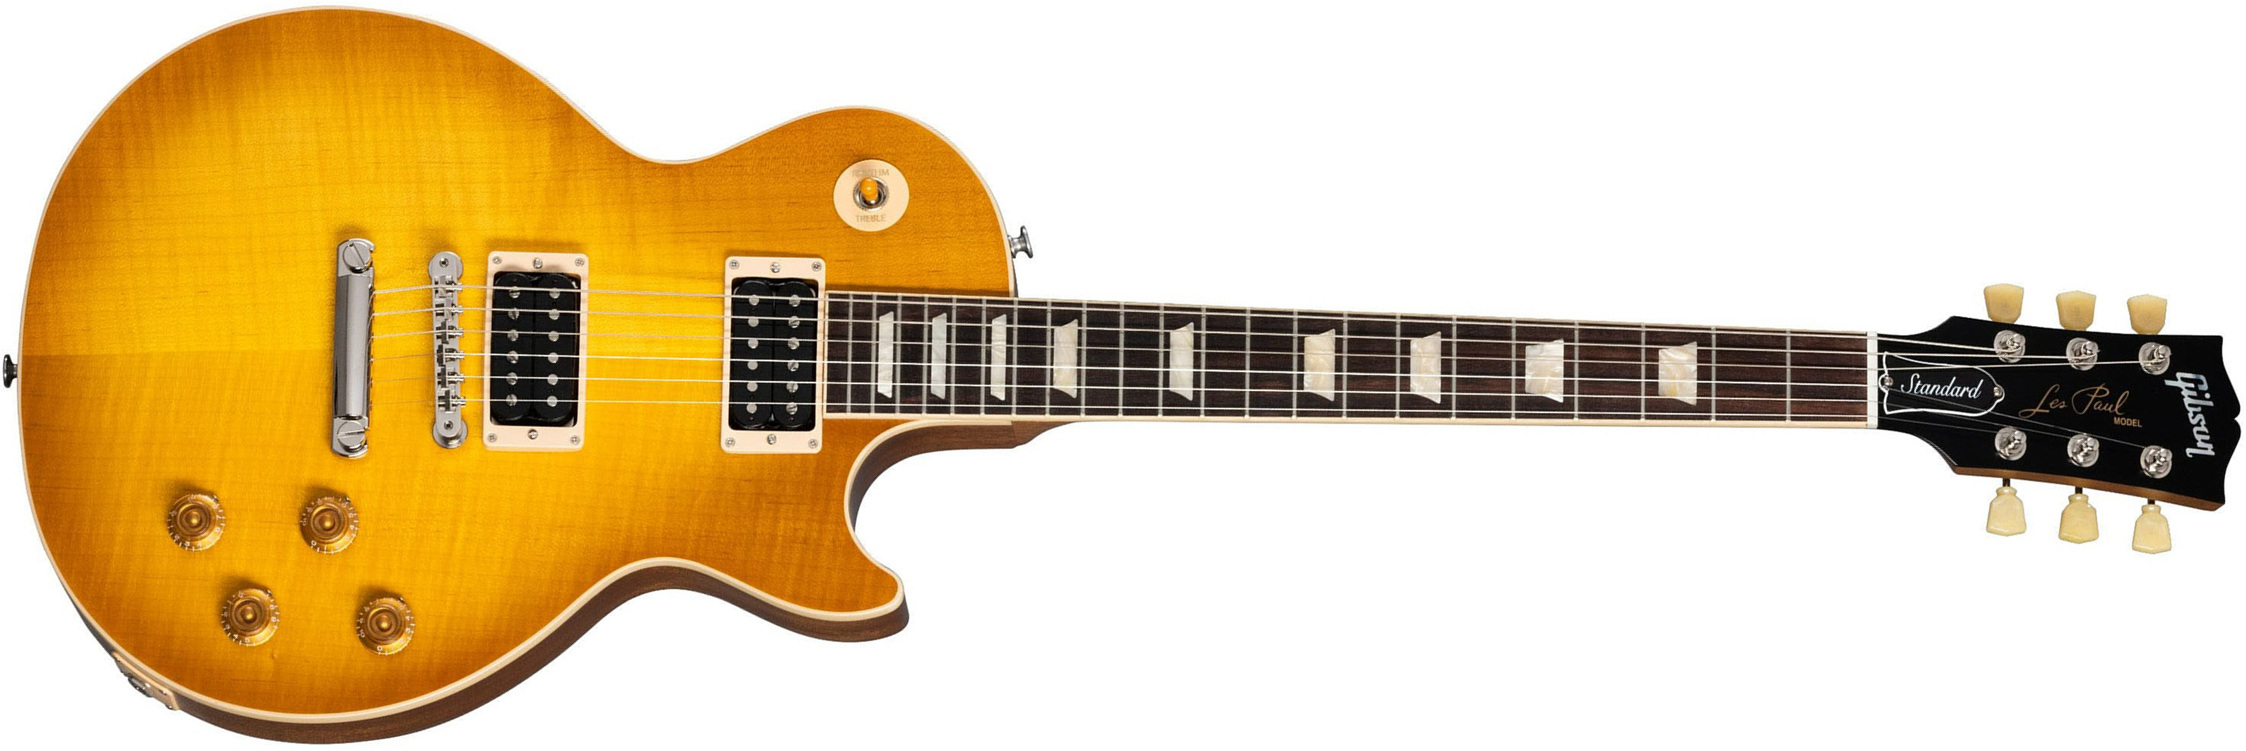 Gibson Les Paul Standard 50s Faded Original 2h Ht Rw - Vintage Honey Burst - Guitare Électrique Single Cut - Main picture